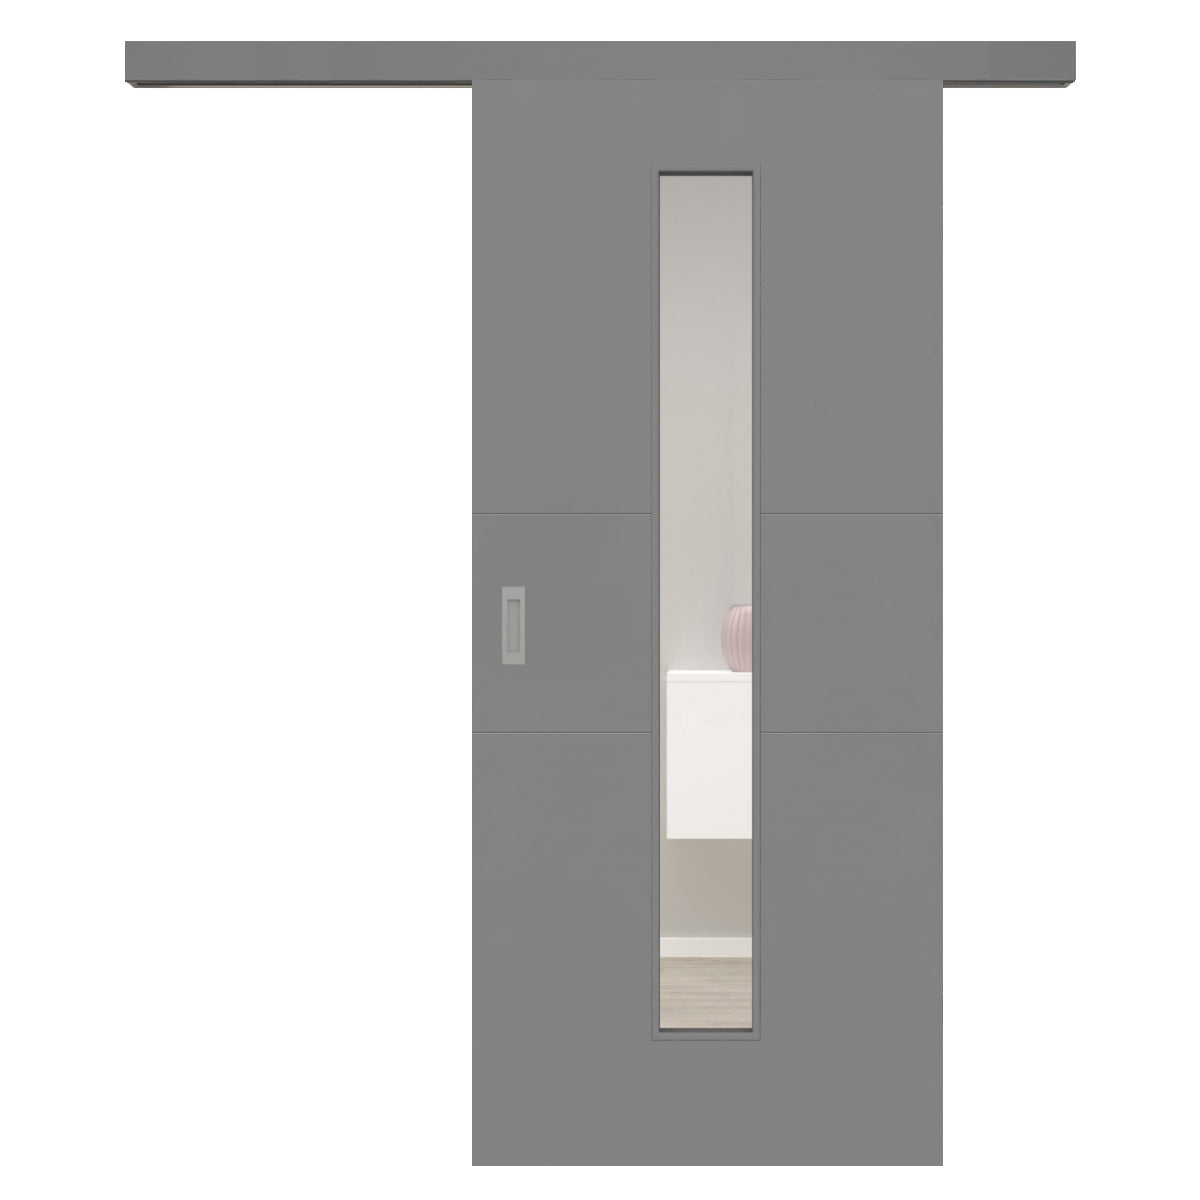 Schiebetür für Set mit grauem Laufkasten mit Lichtausschnitt grau 2 Rillen quer - Modell Designtür Q27LAM